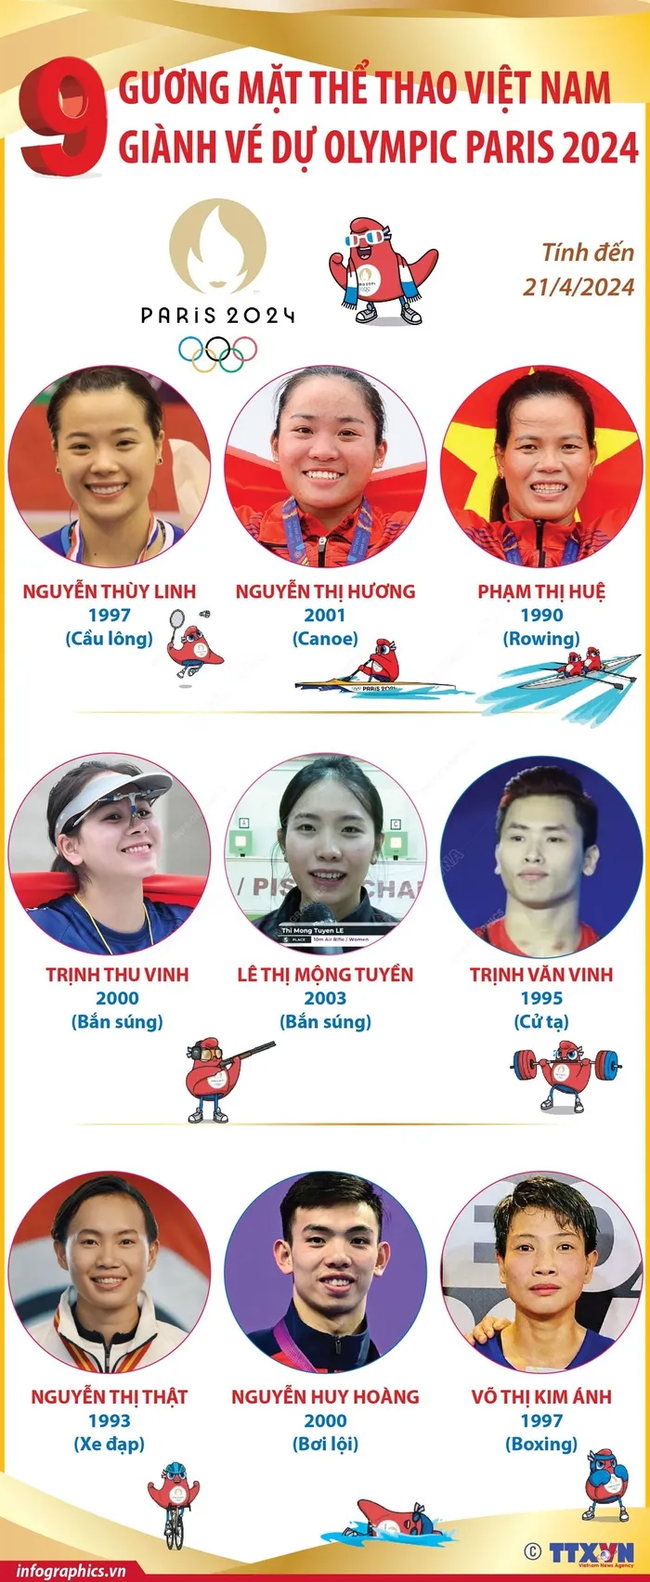 Tin nóng thể thao sáng 22/4: U23 Việt Nam gặp khó về nhân sự ở tứ kết U23 châu Á - Ảnh 5.